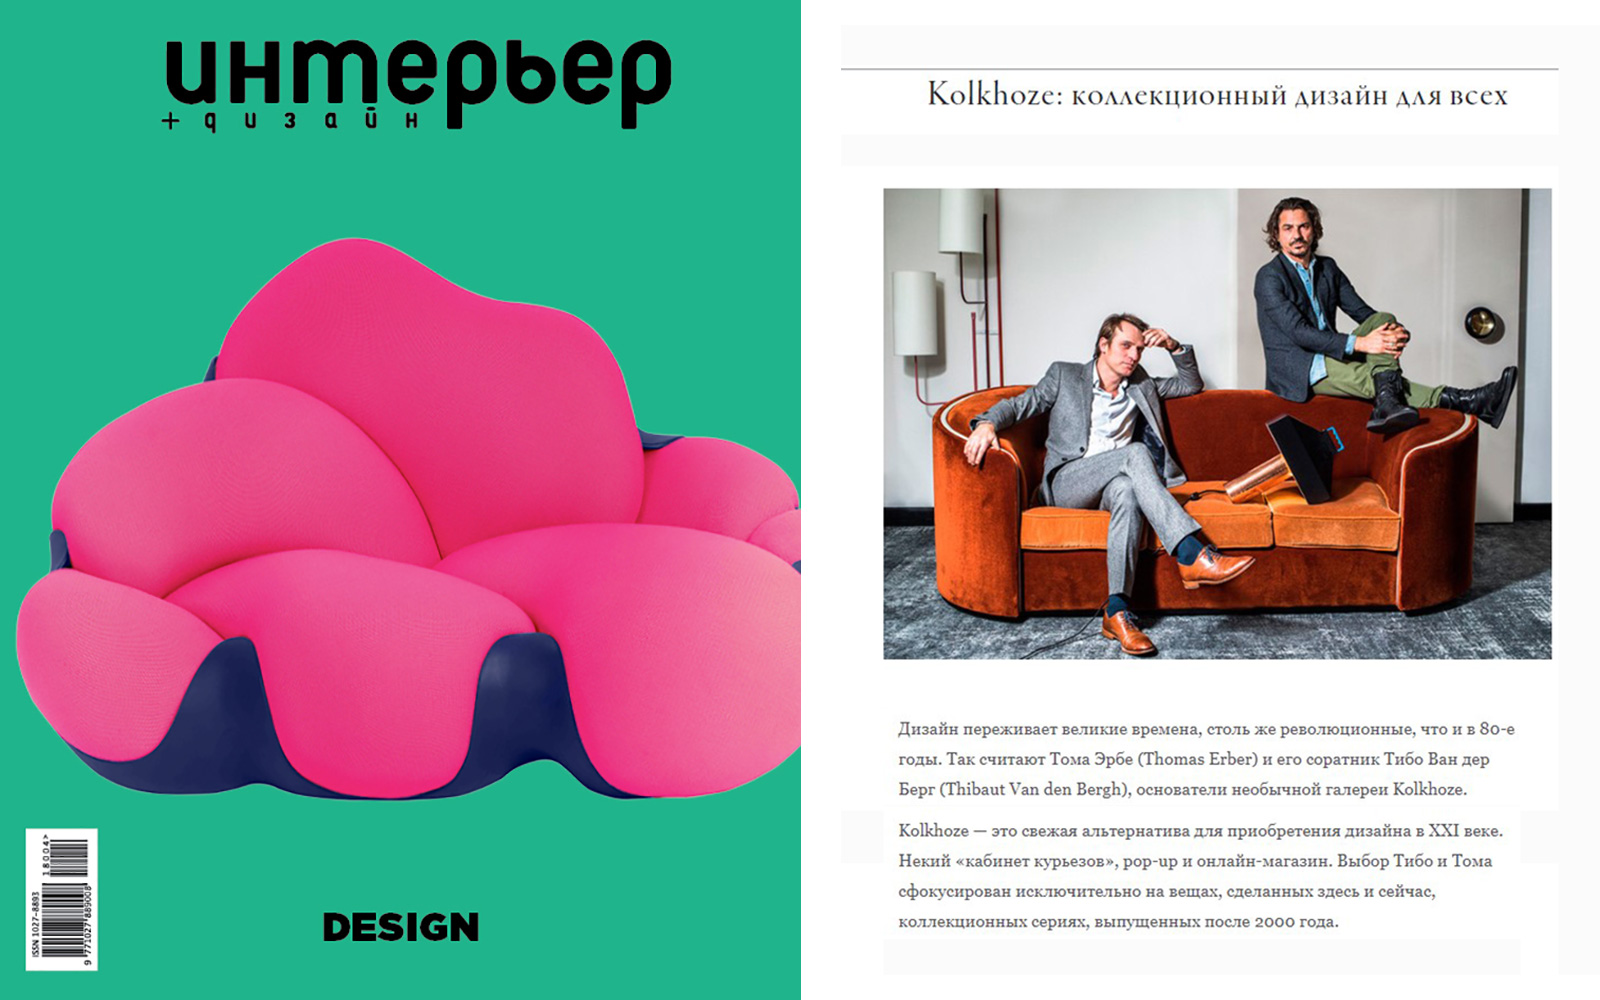 Interior.ru Kolkhoze collectible design